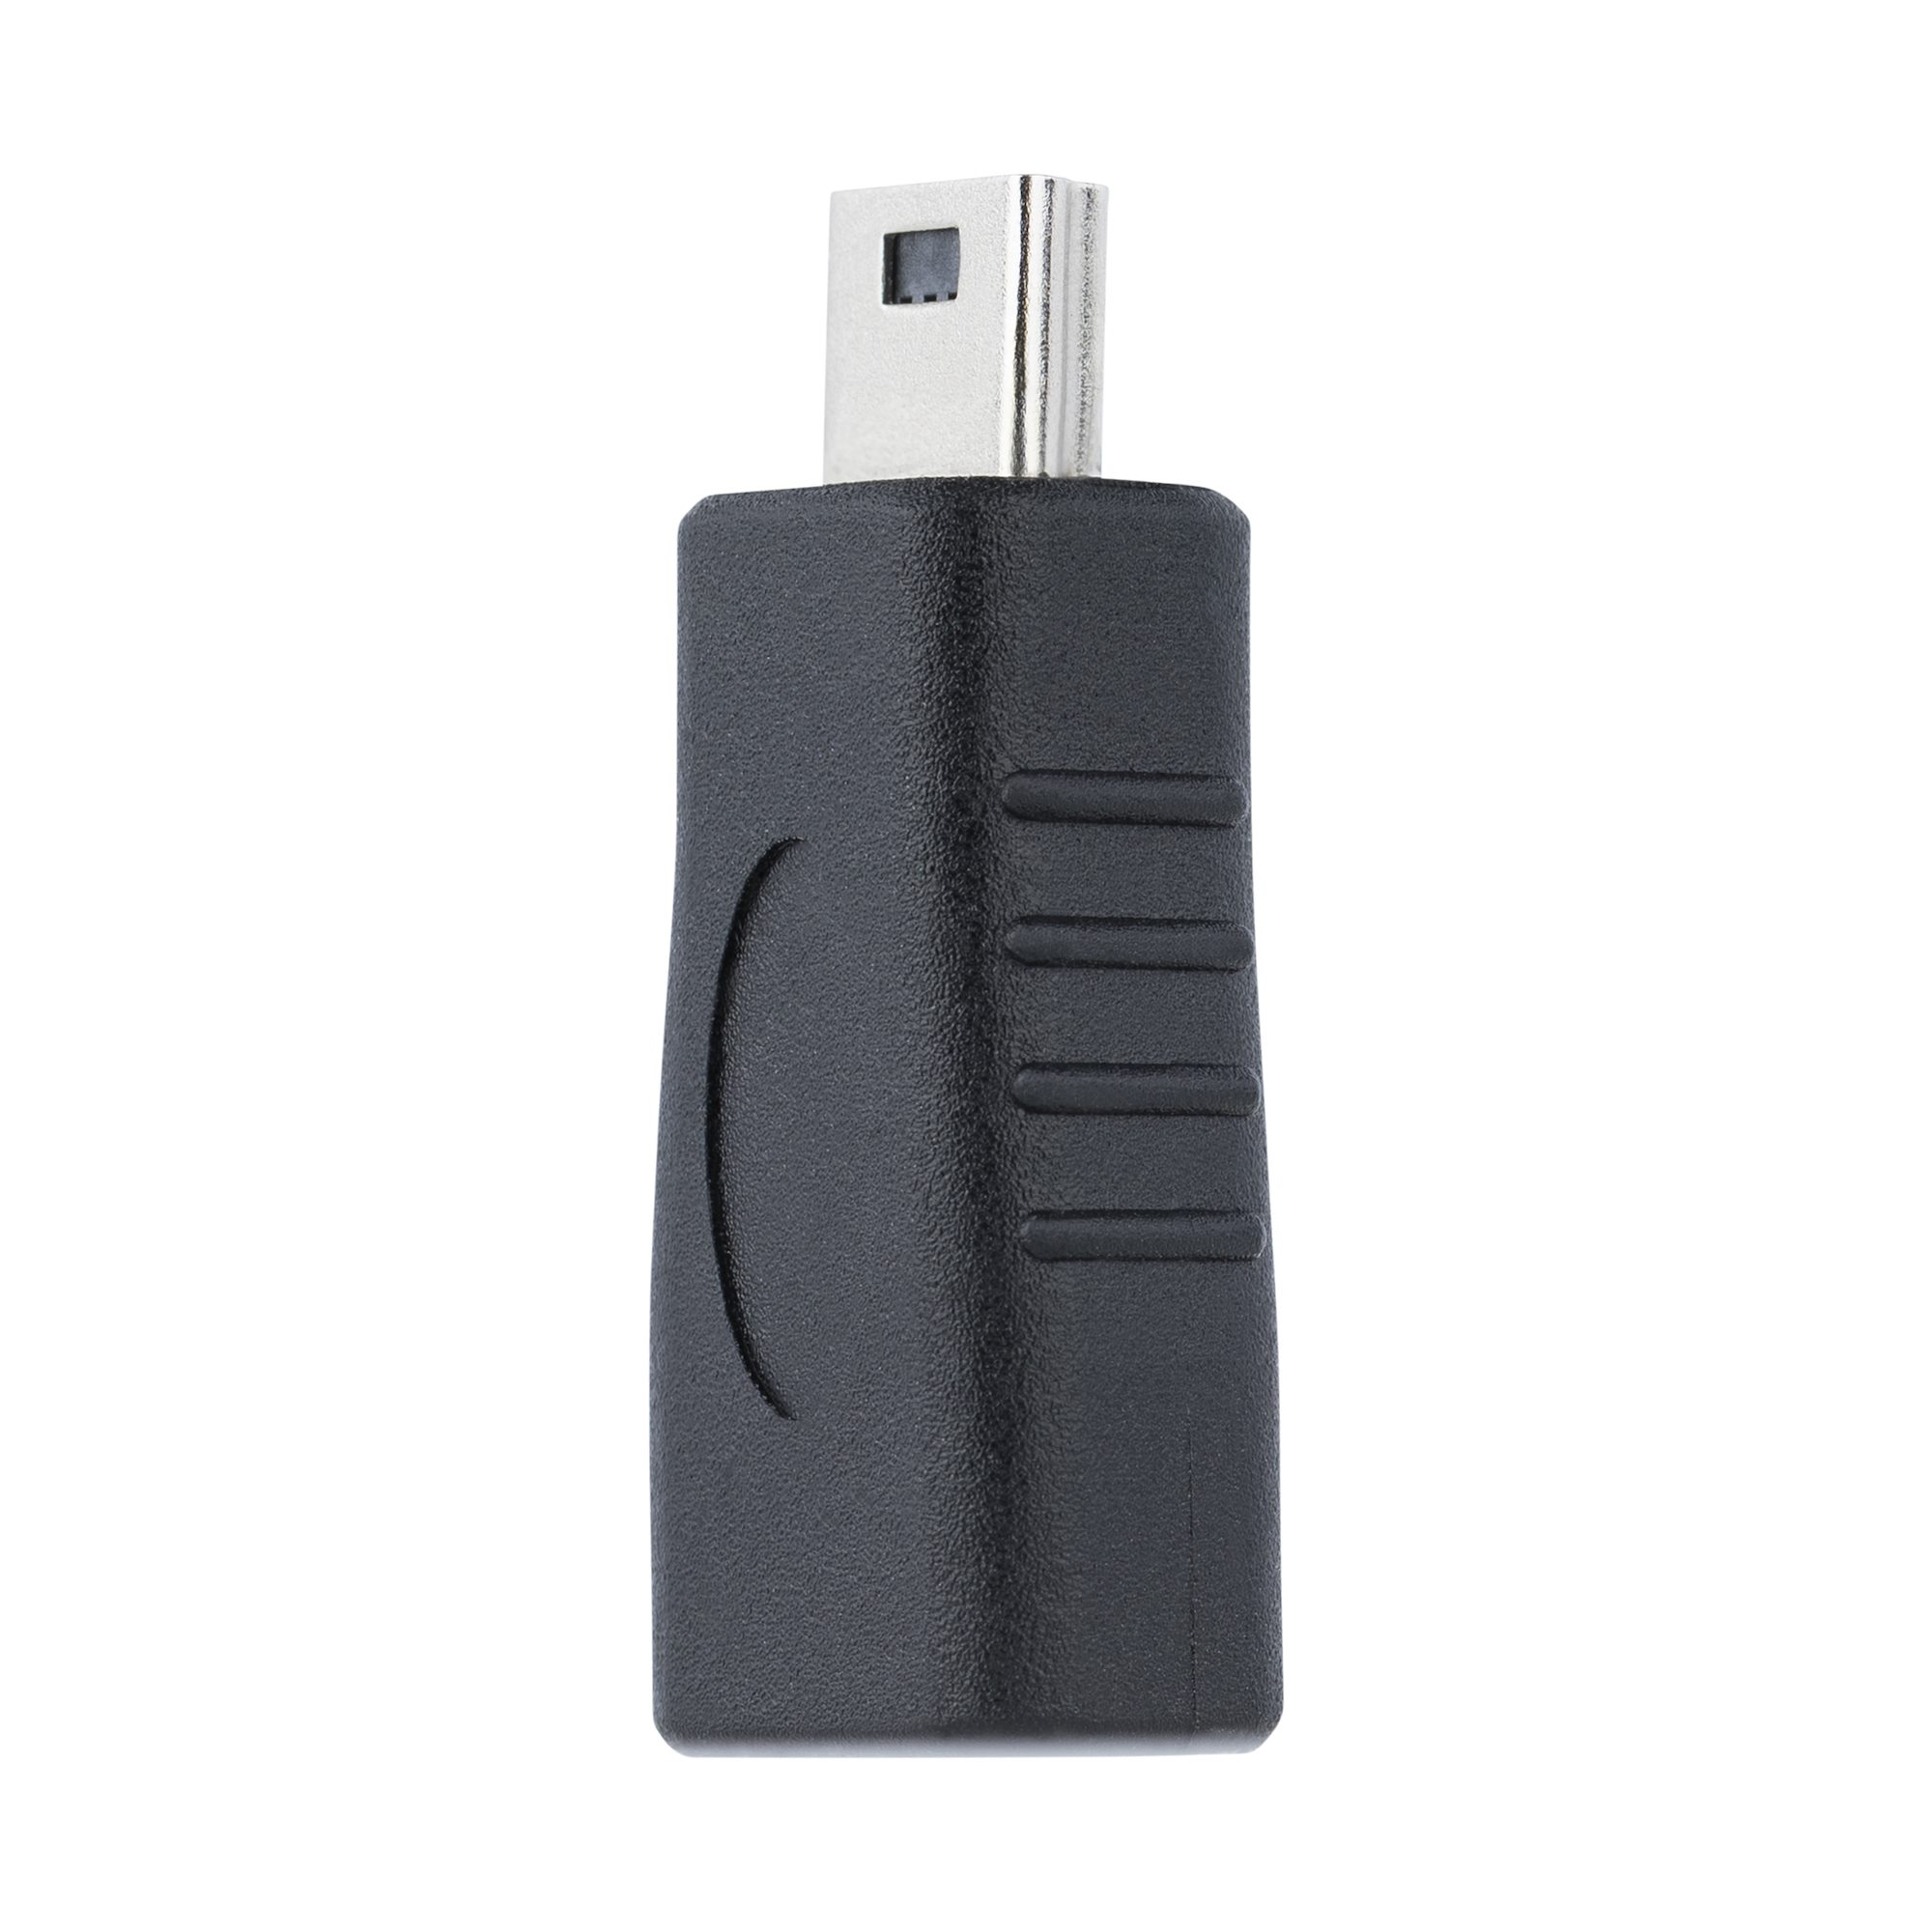 Micro USB to USB B Adapter M/F - Adaptateurs USB (USB 2.0